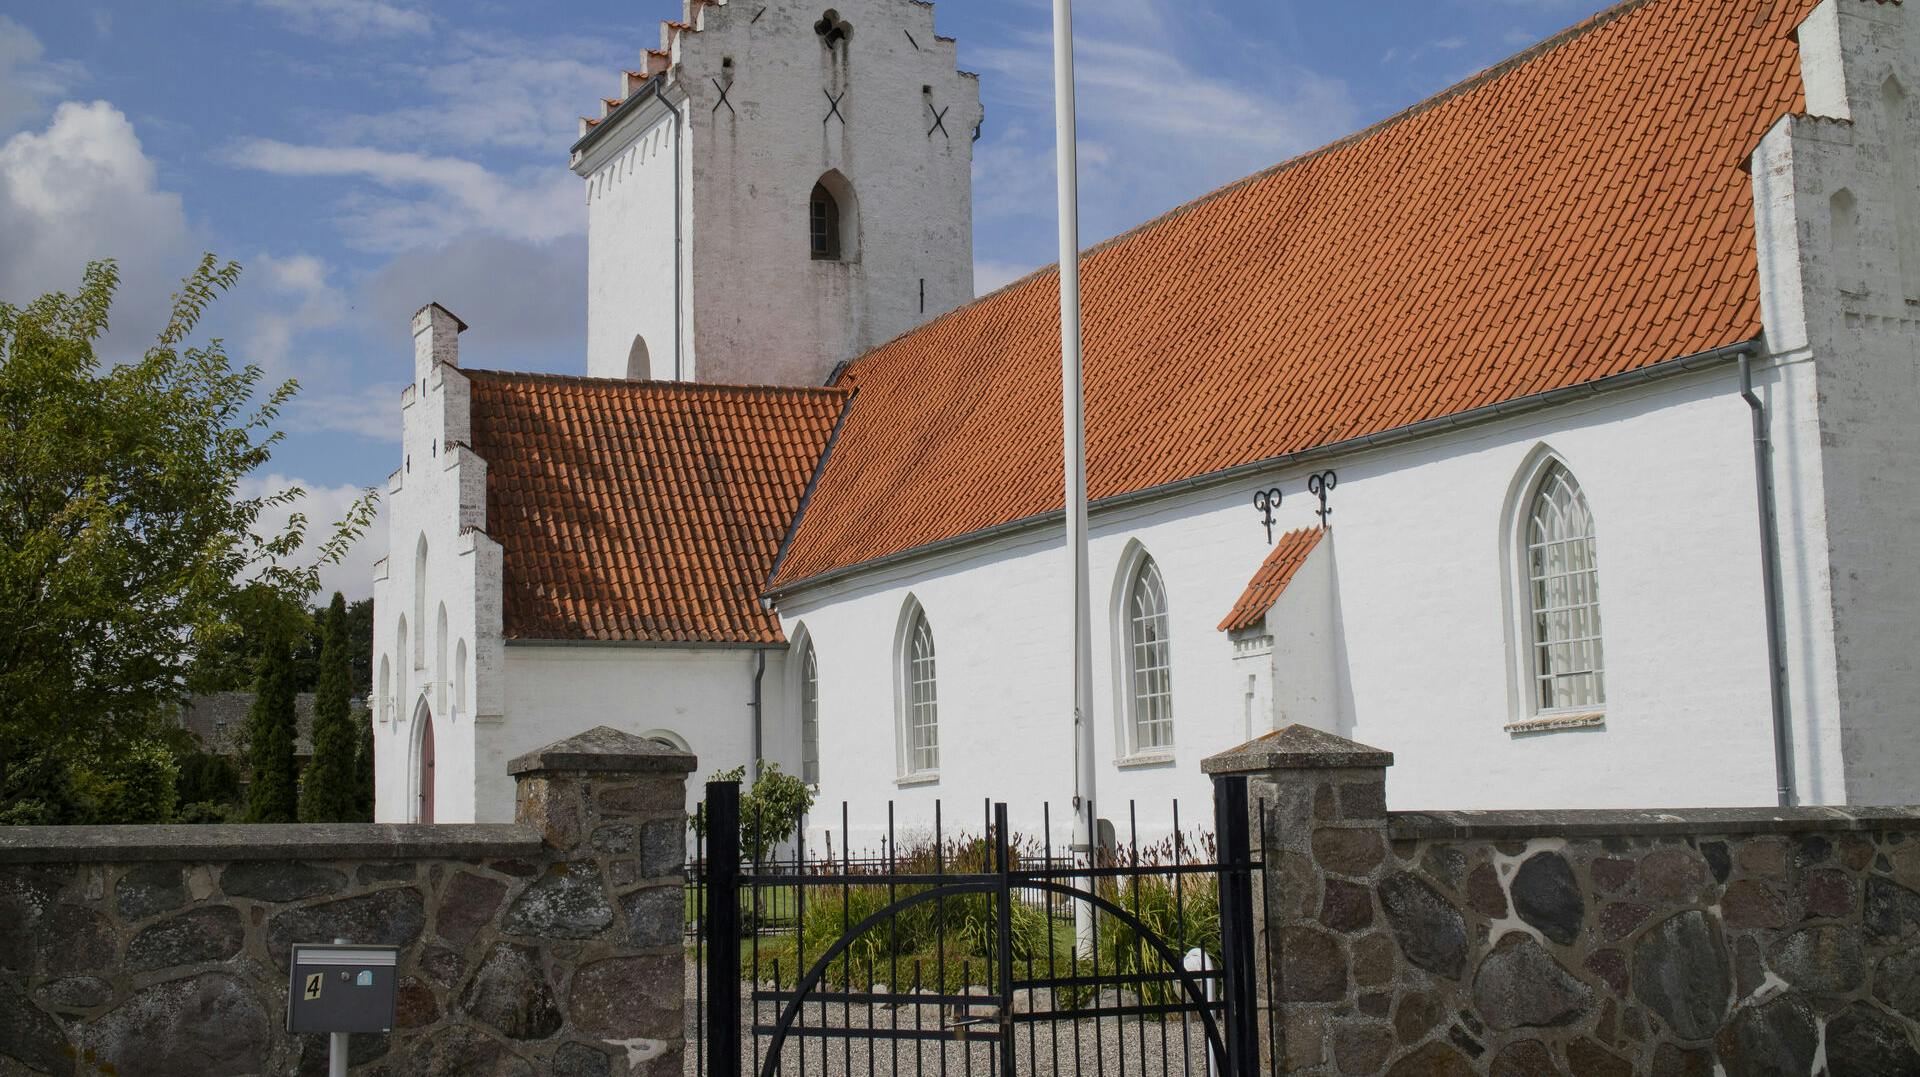 Spjellerup Kirkes i weekenden udsat for omfattende hærværk. 